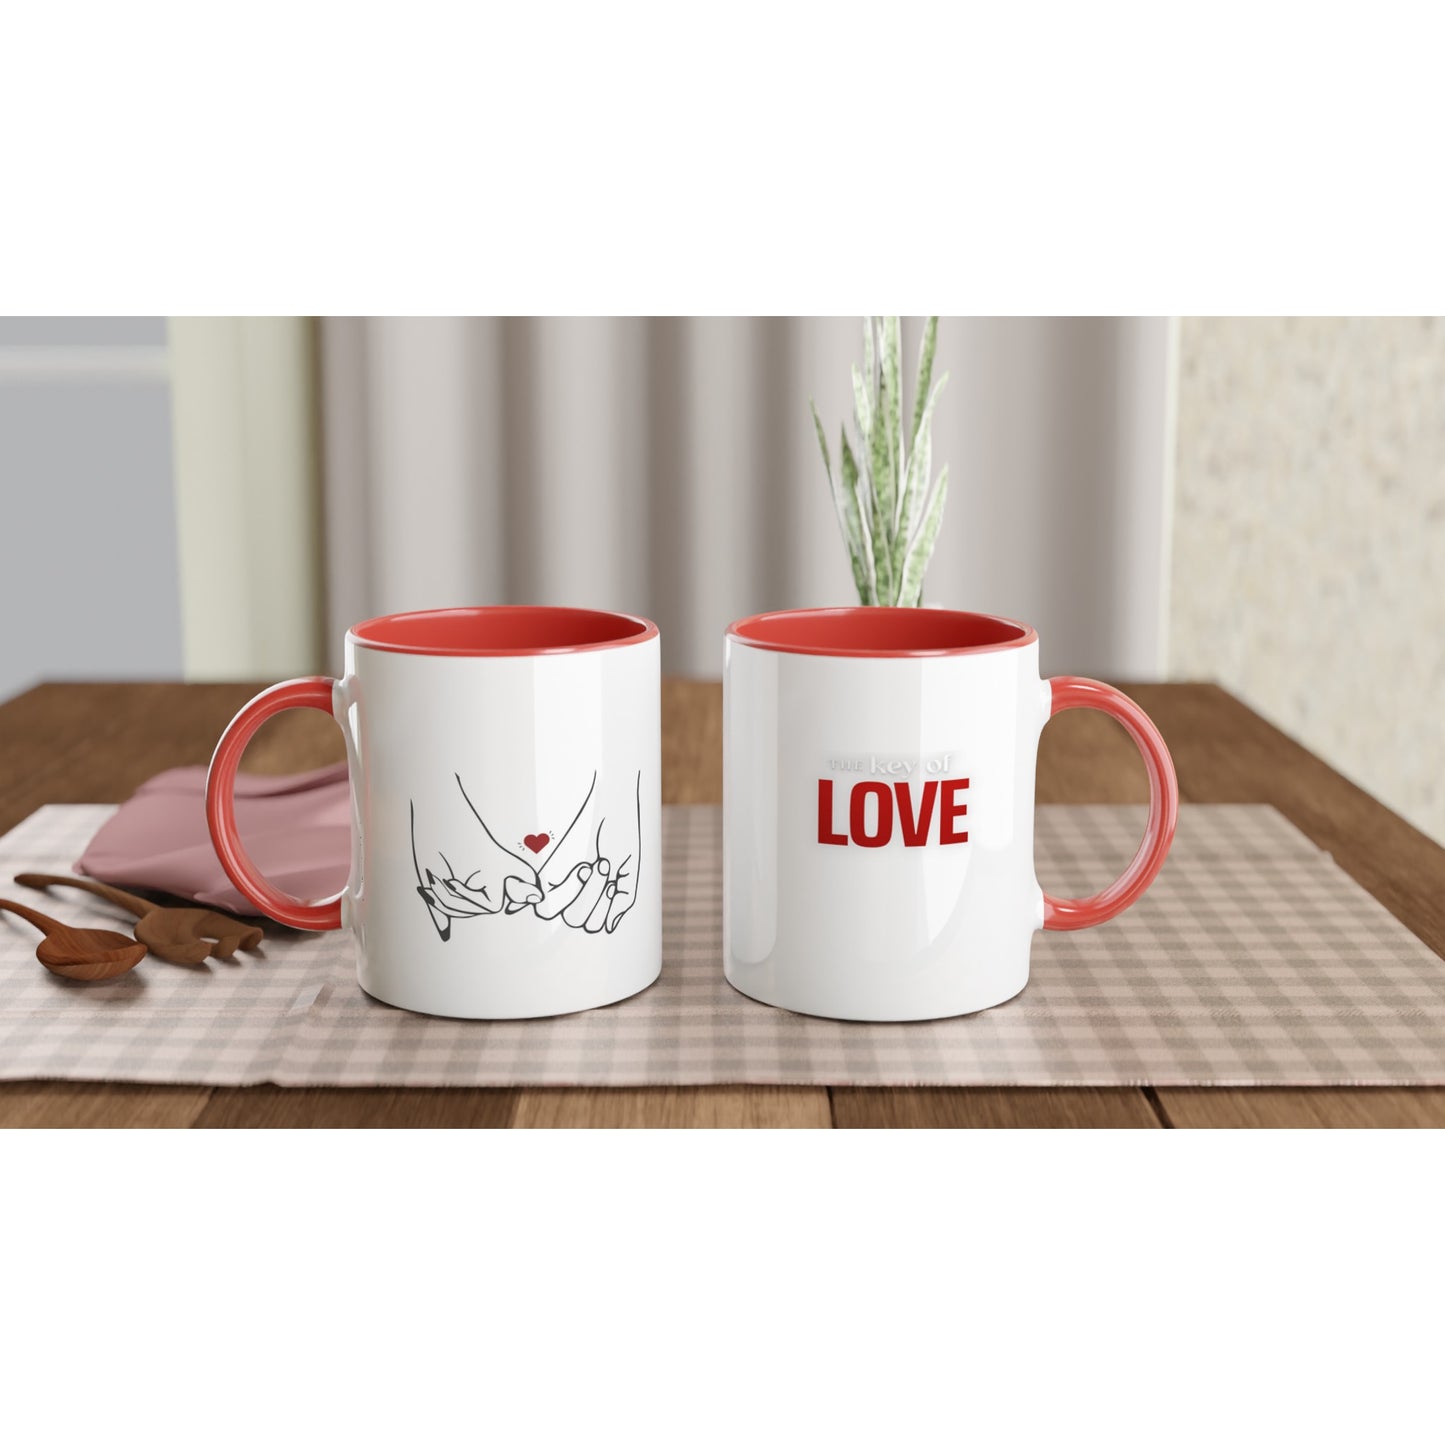 Key of Love Ceramic Mug